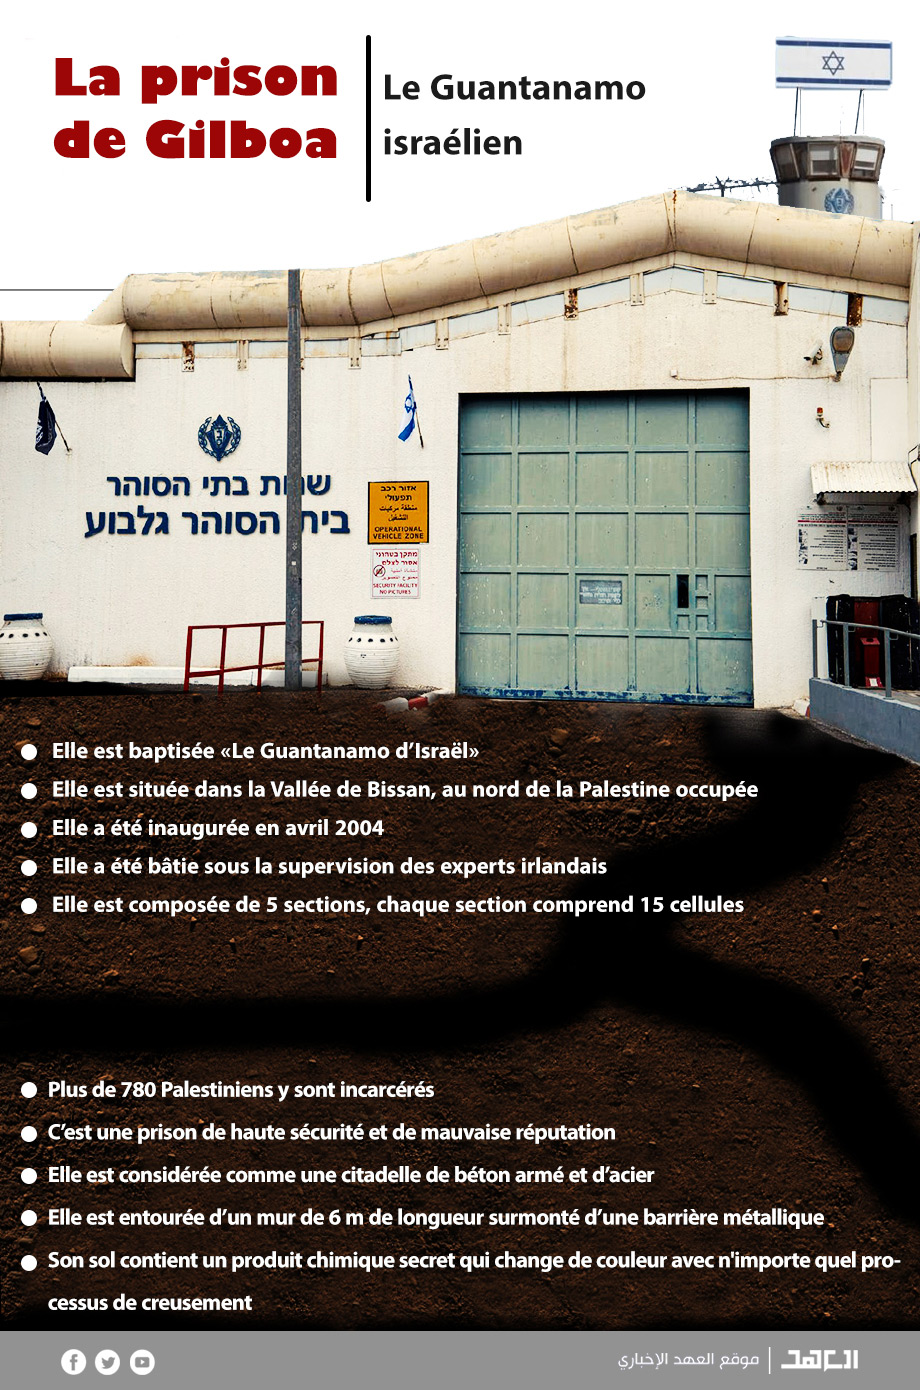 La prison de Gilboa, le Guantanamo israélien